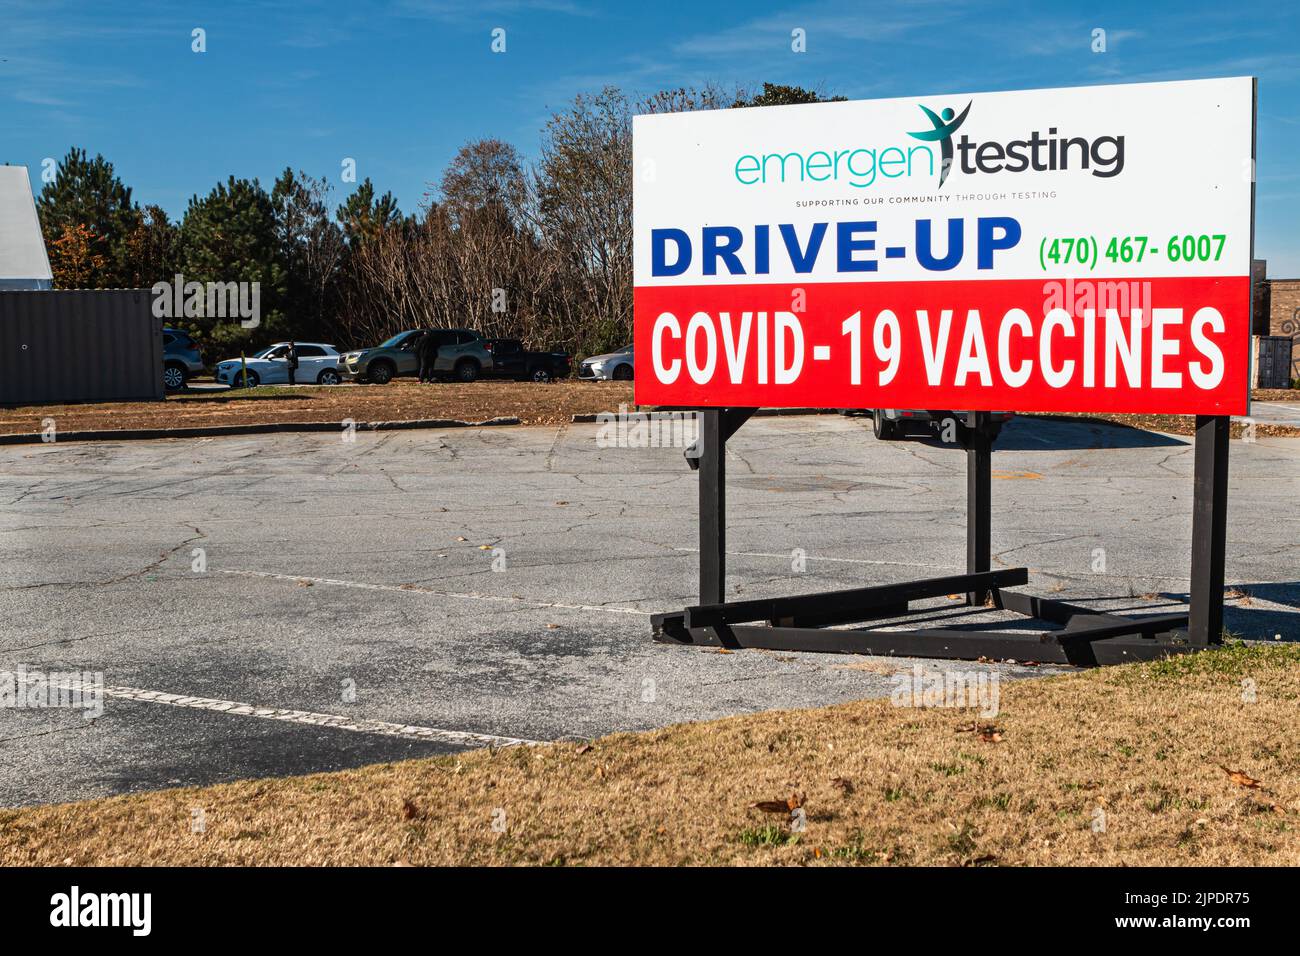 LAWRENCEVILLE, GA / EE.UU. - 20 DE NOVIEMBRE: Sign promueve pruebas y vacunas Drive-up Covid-19 el 20 de noviembre de 2021 en Lawrenceville, GA. Foto de stock